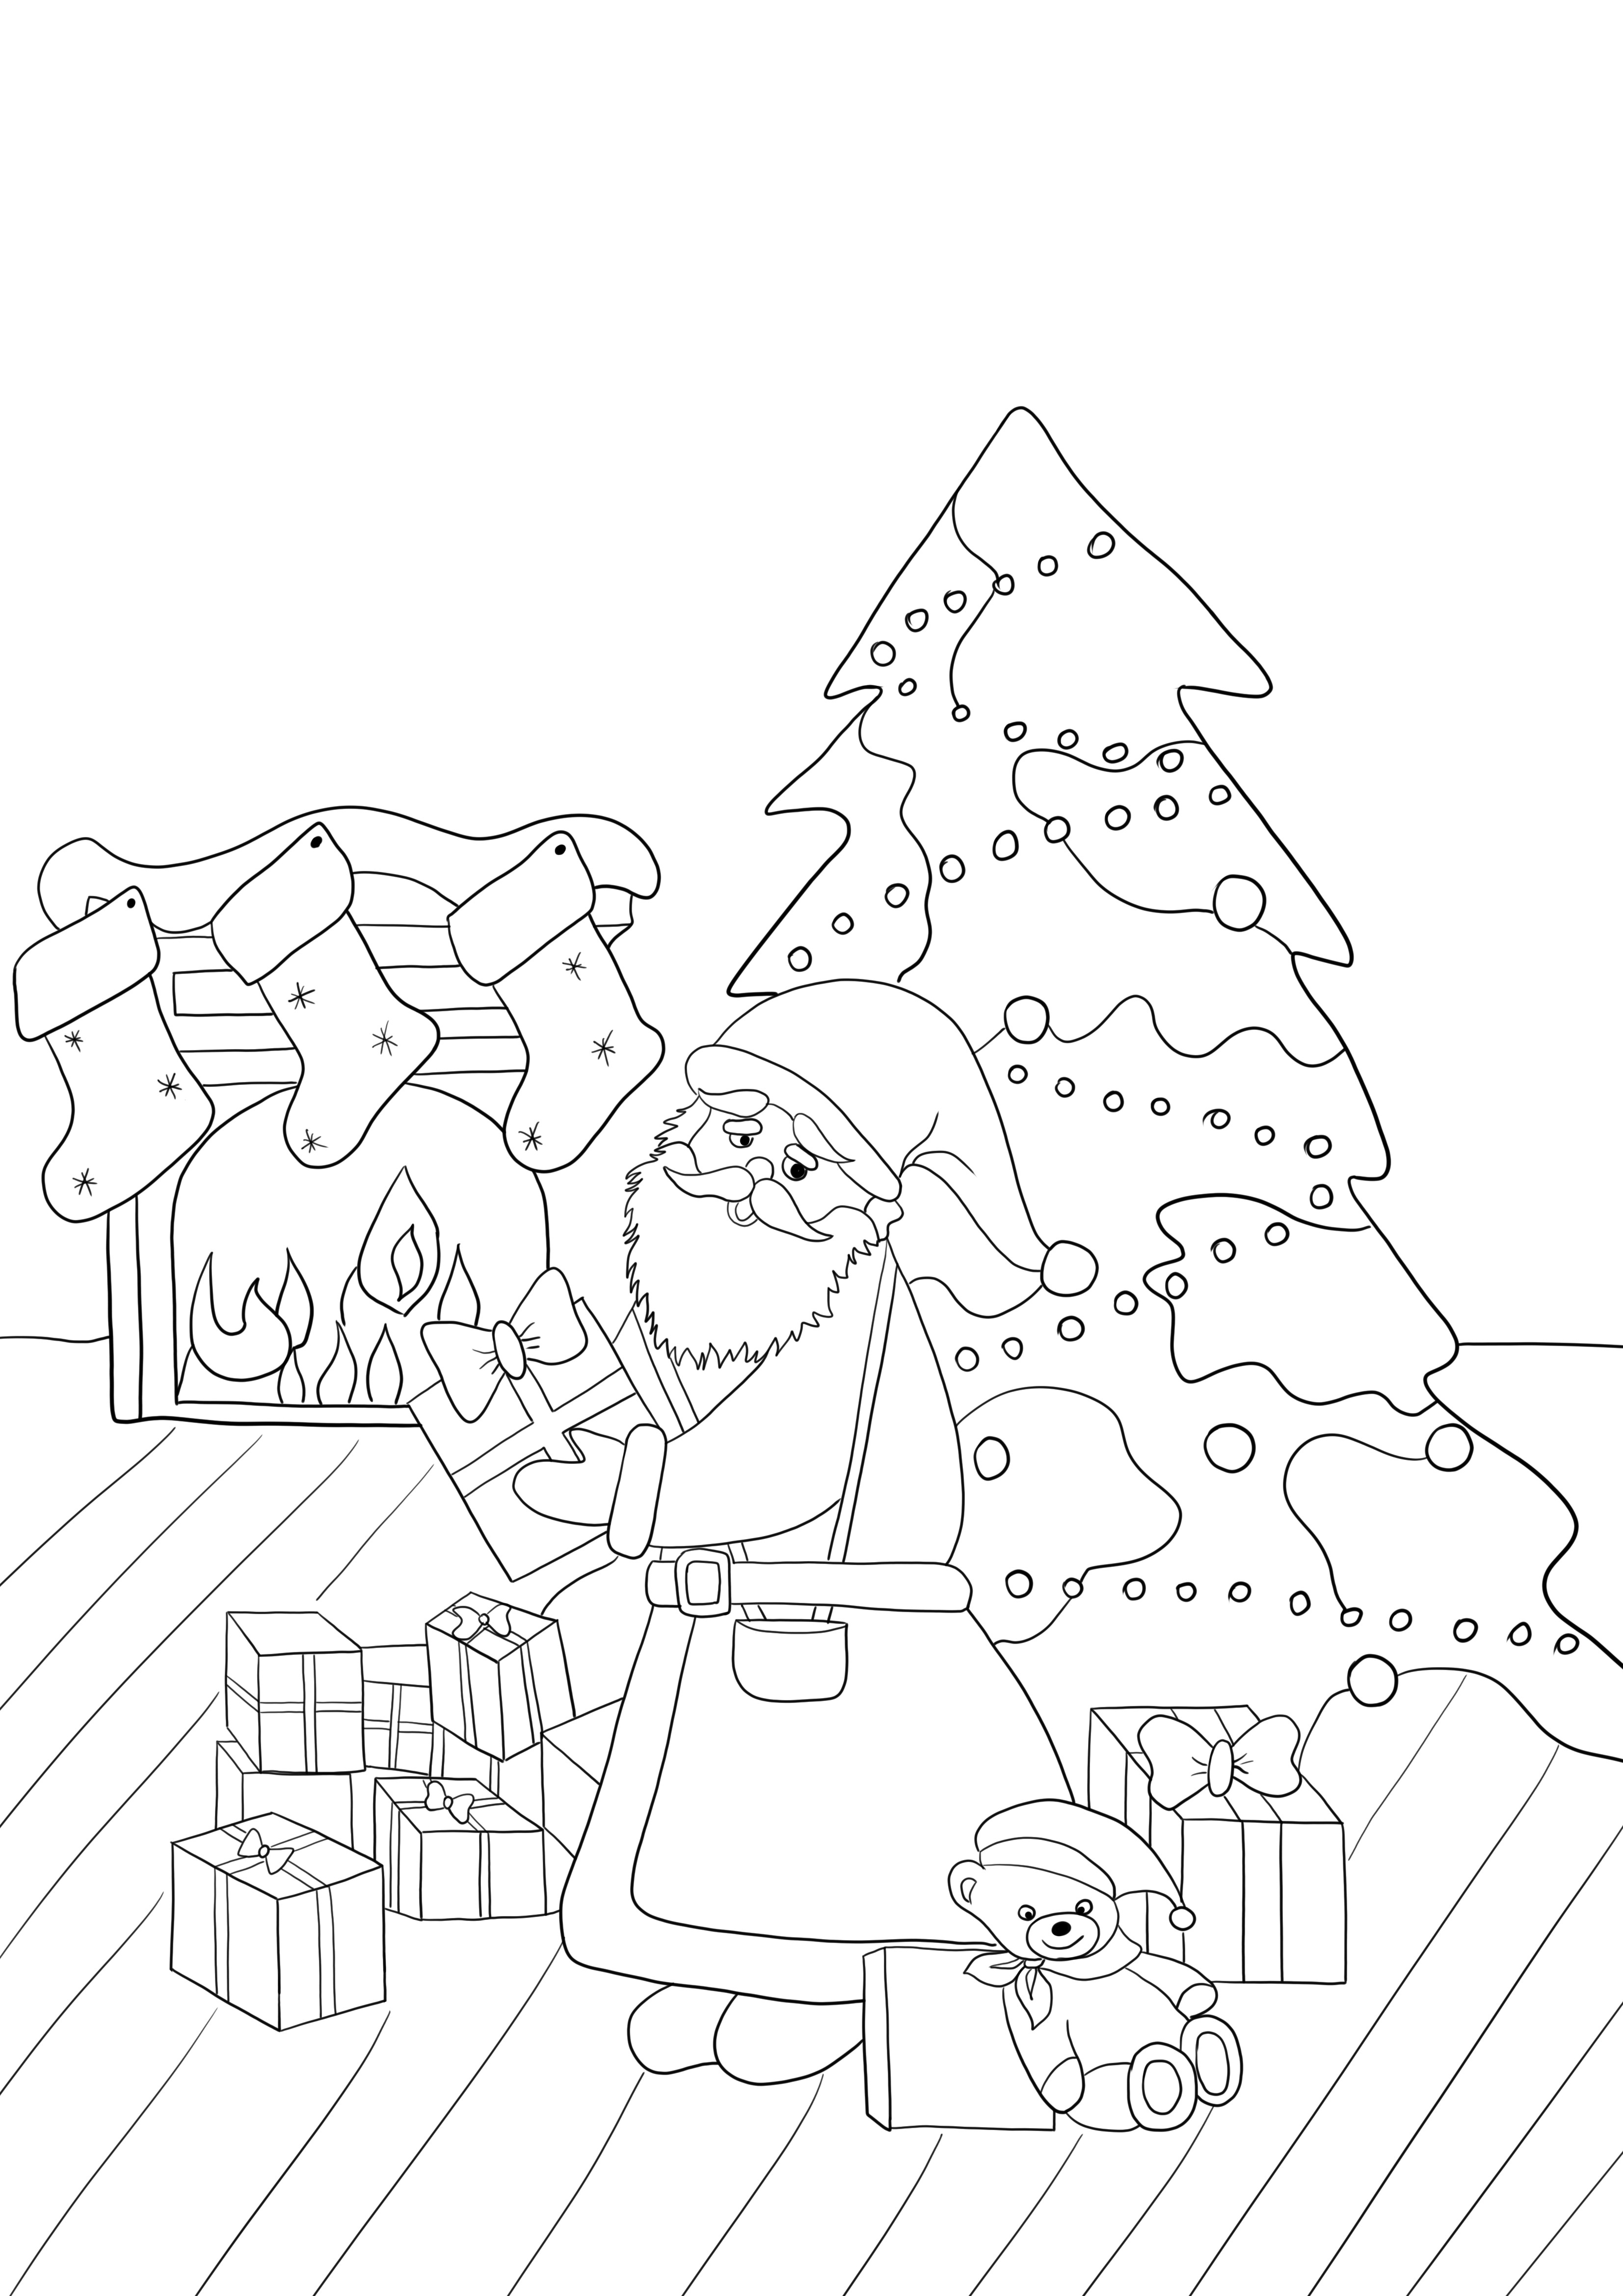 Merry Christmas card za darmo do wydrukowania i pobrania obrazu